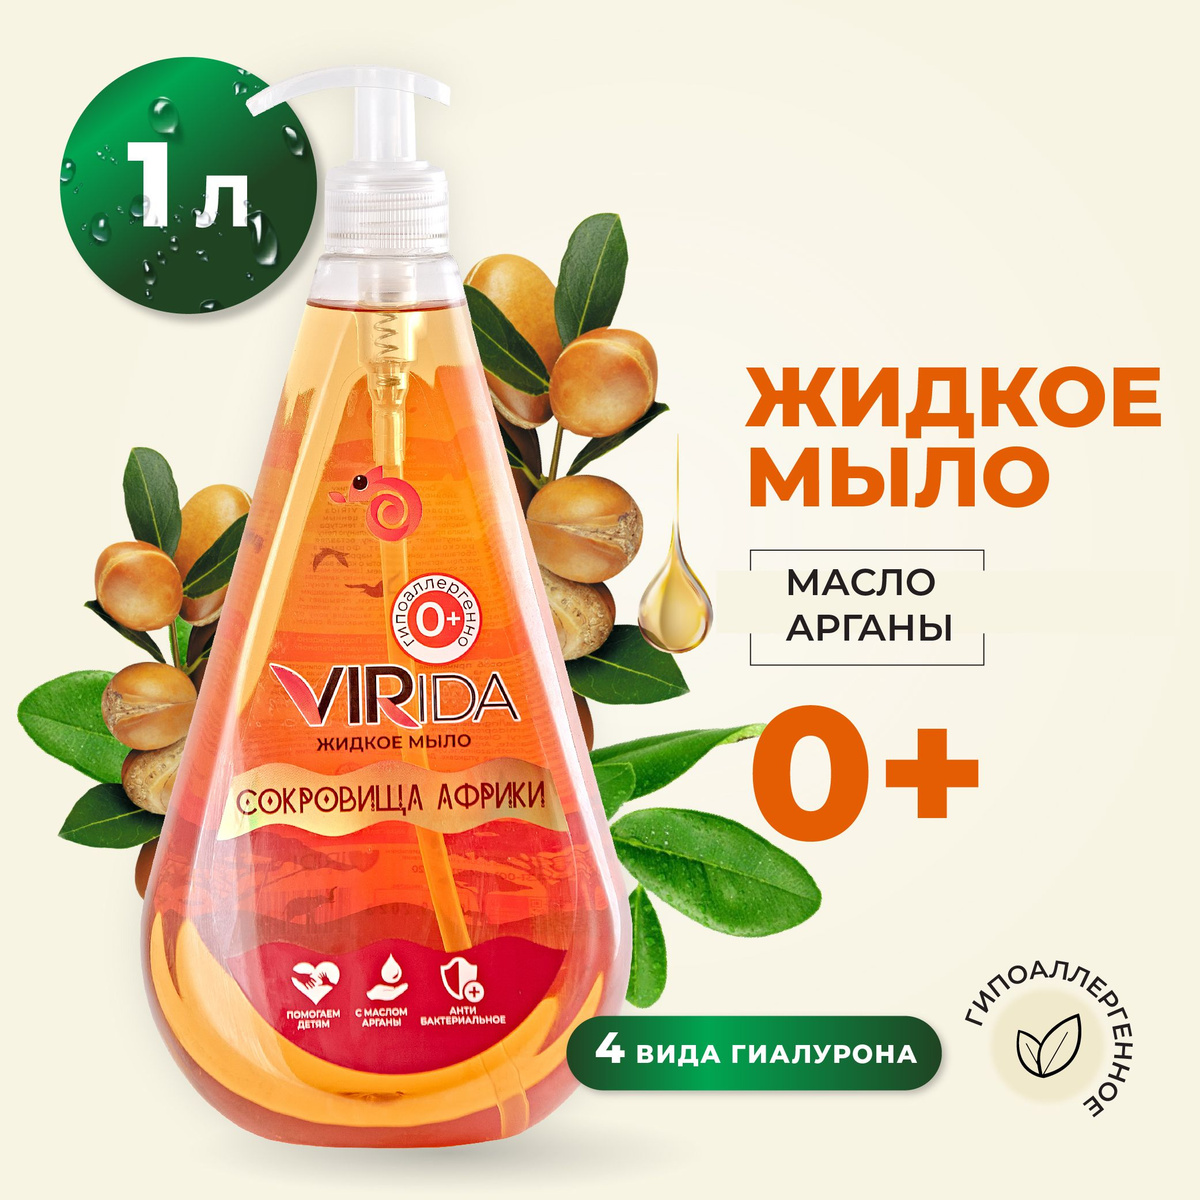 Жидкое мыло гипоаллергенное 0+ увлажняющее антибактериальное с маслом арганы VIRida "Сокровища Африки